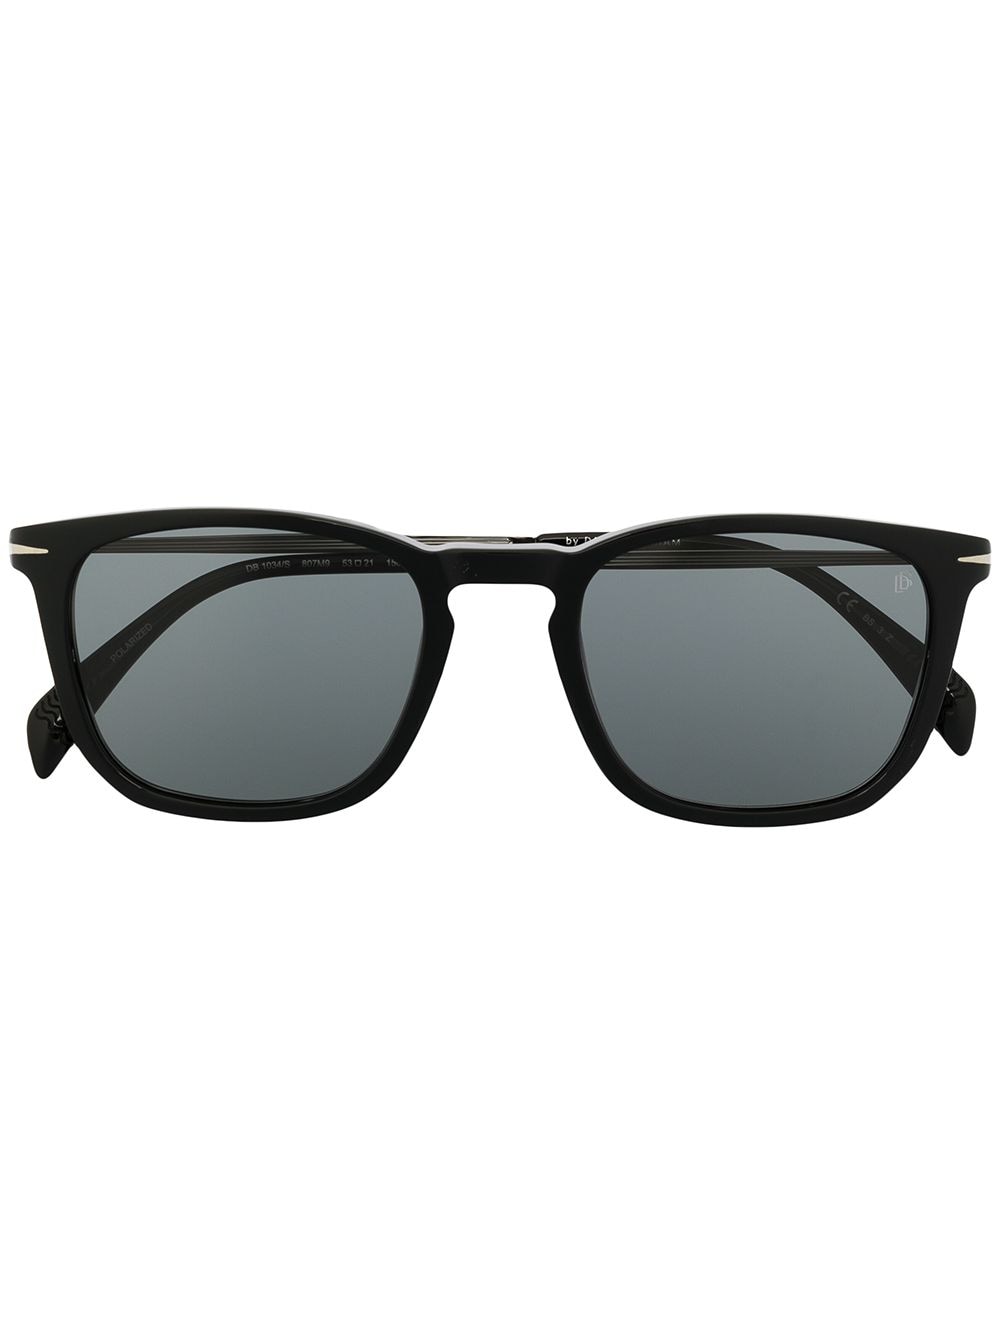 Eyewear by David Beckham square-frame sunglasses - Metallic von Eyewear by David Beckham